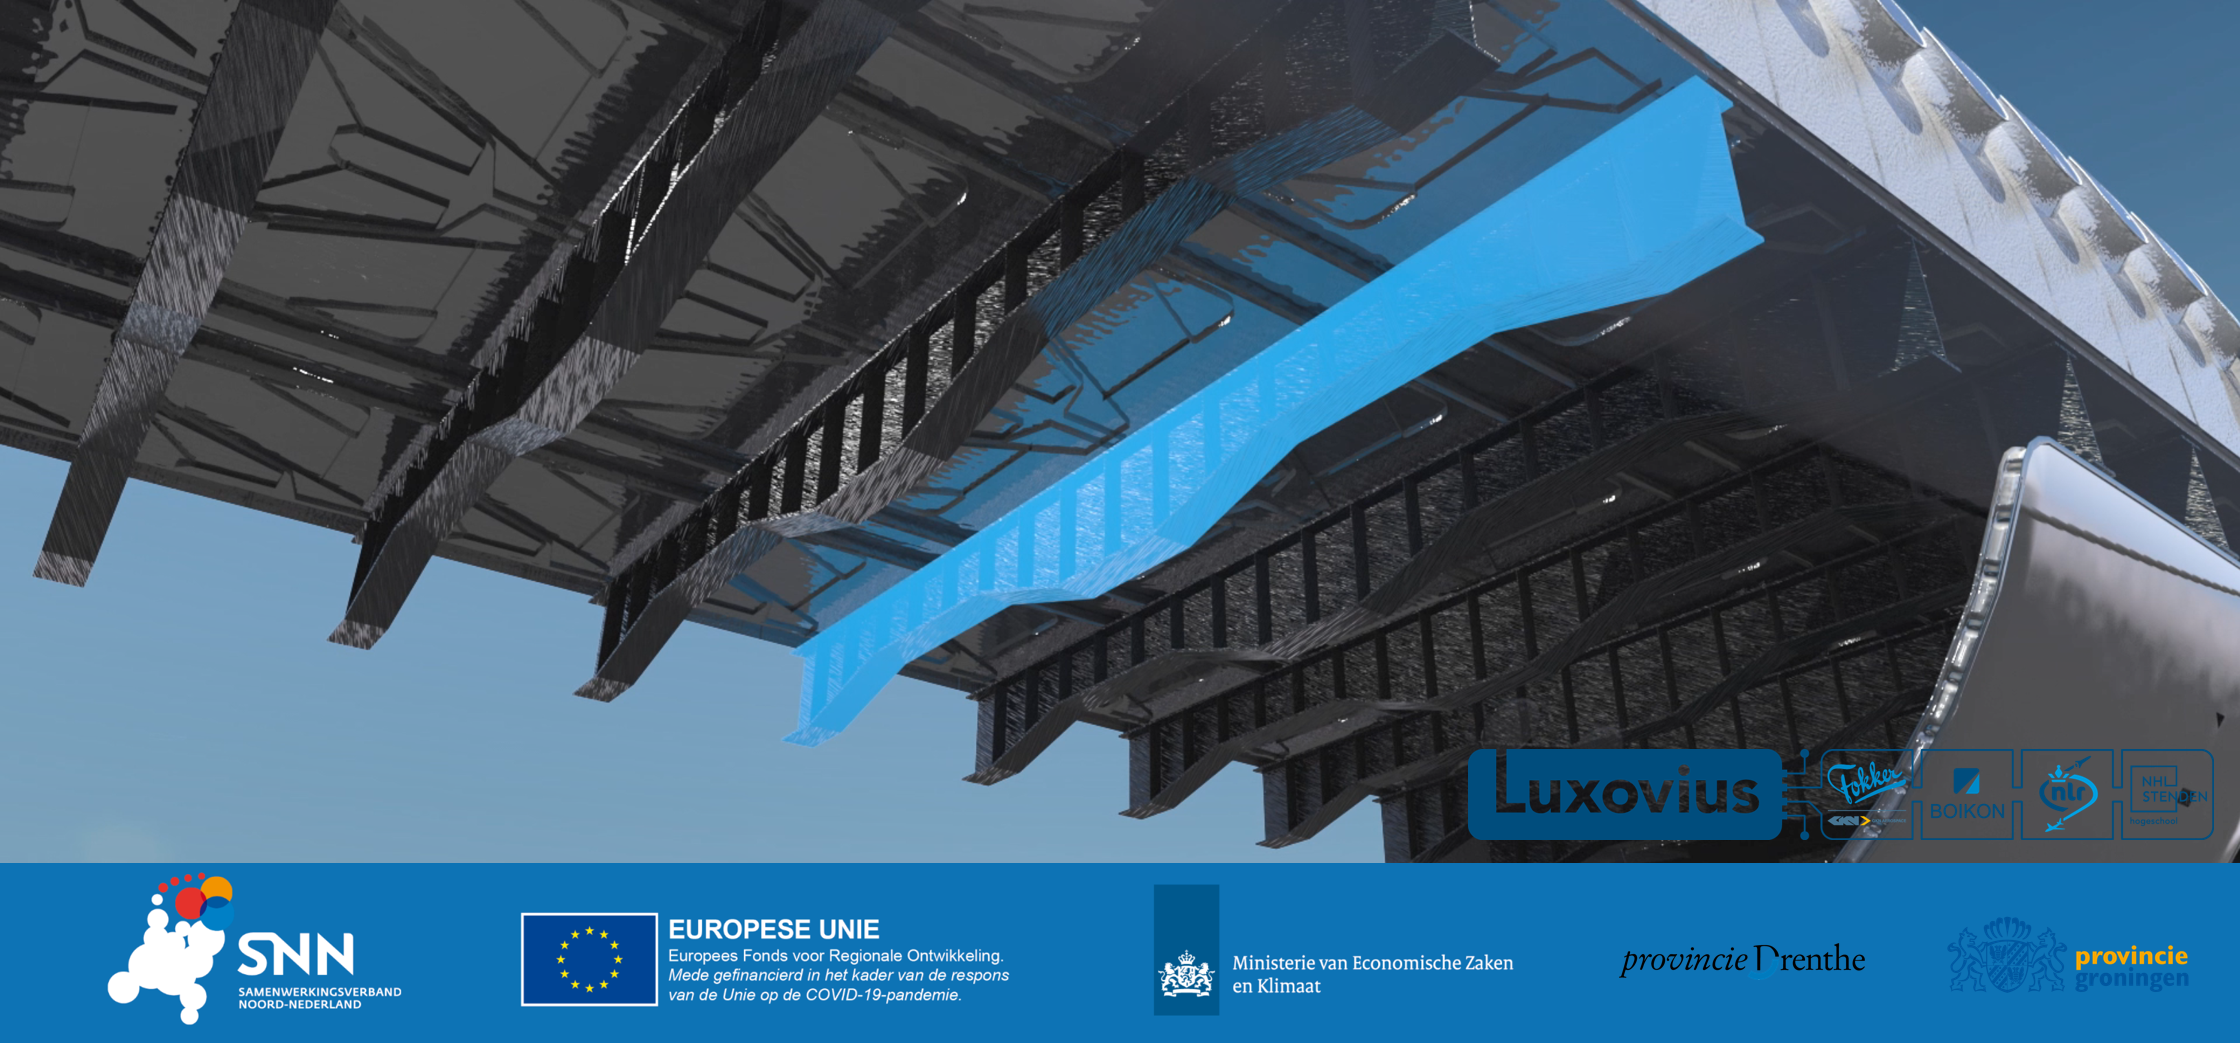 Luxovius banner